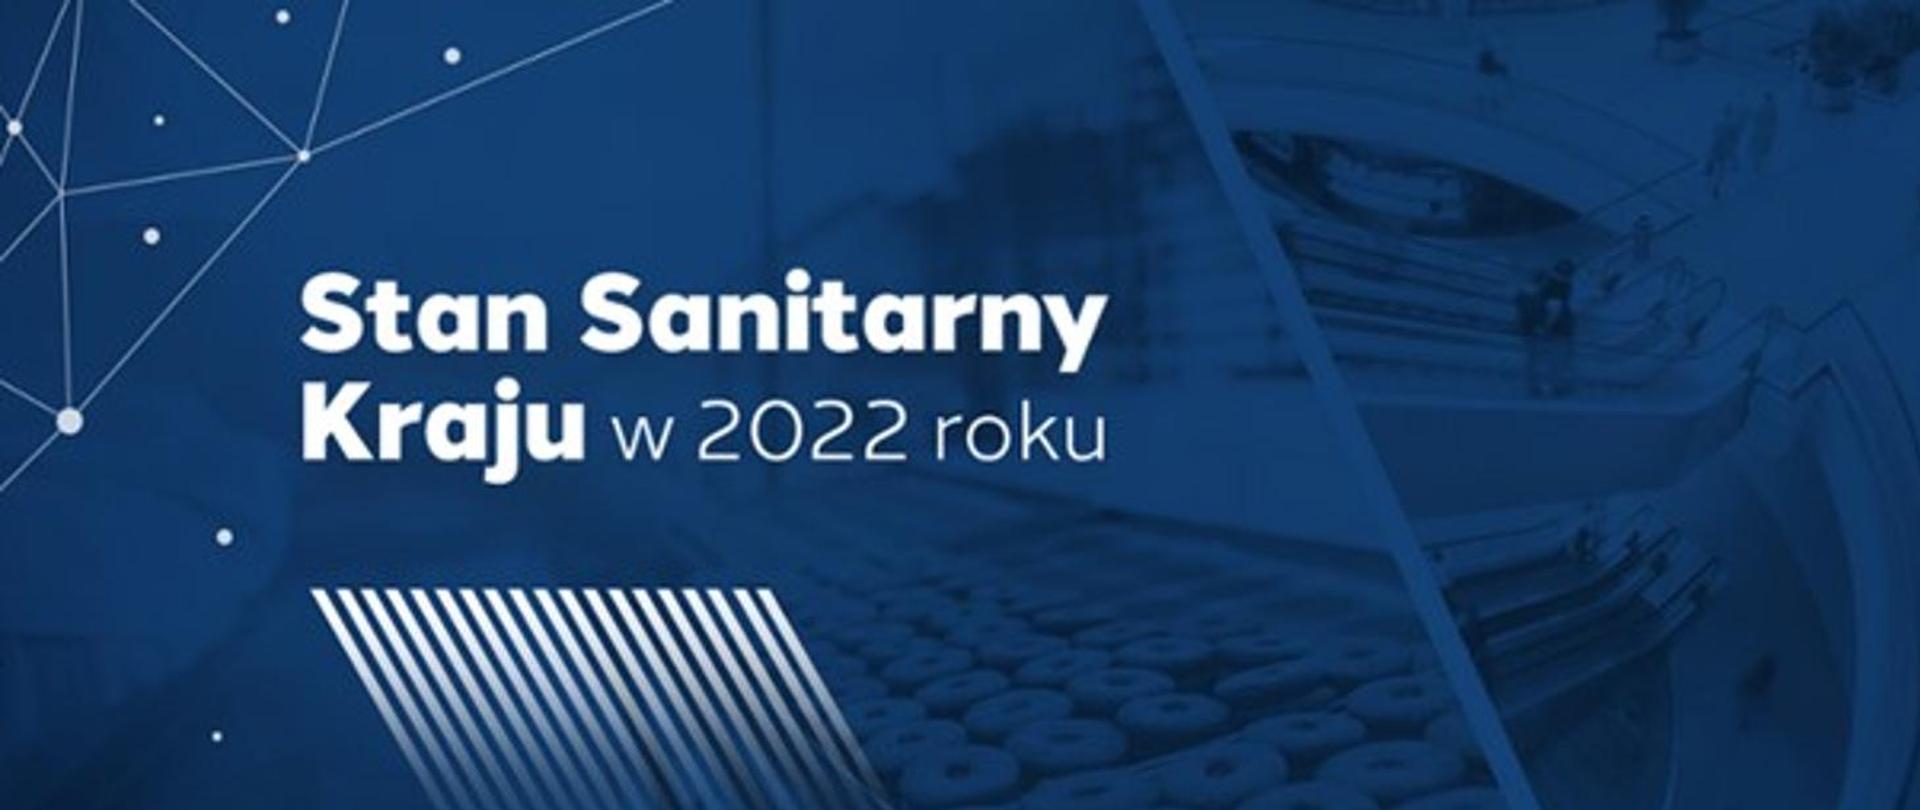 Stan Sanitarny Kraju w 2022 roku